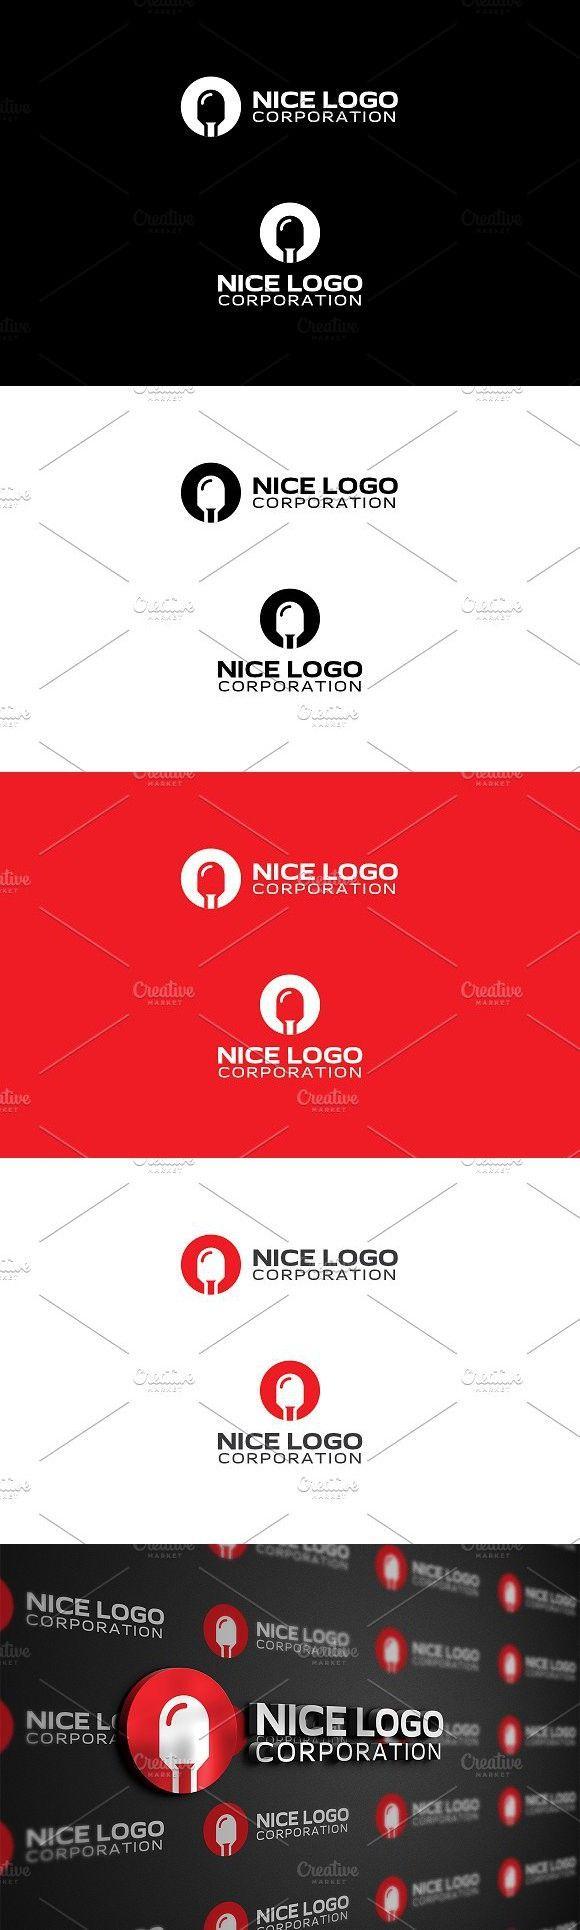 Diode Logo - diode logo. Logo Templates. Logos, Logo templates, Logos design